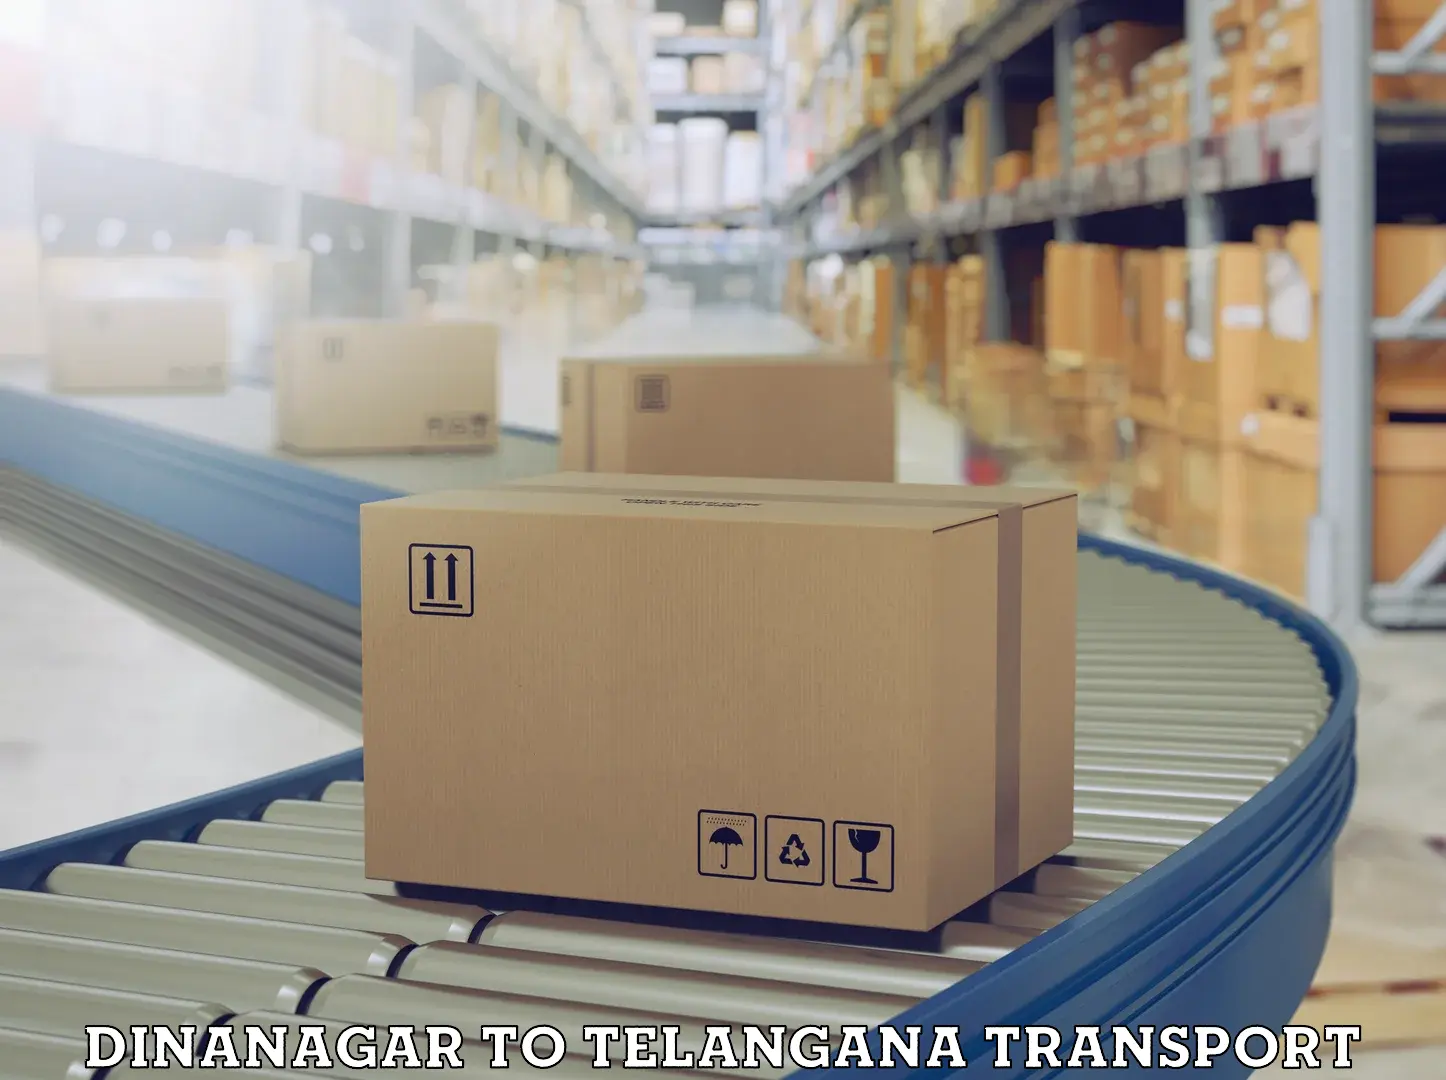 Online transport booking Dinanagar to Telangana